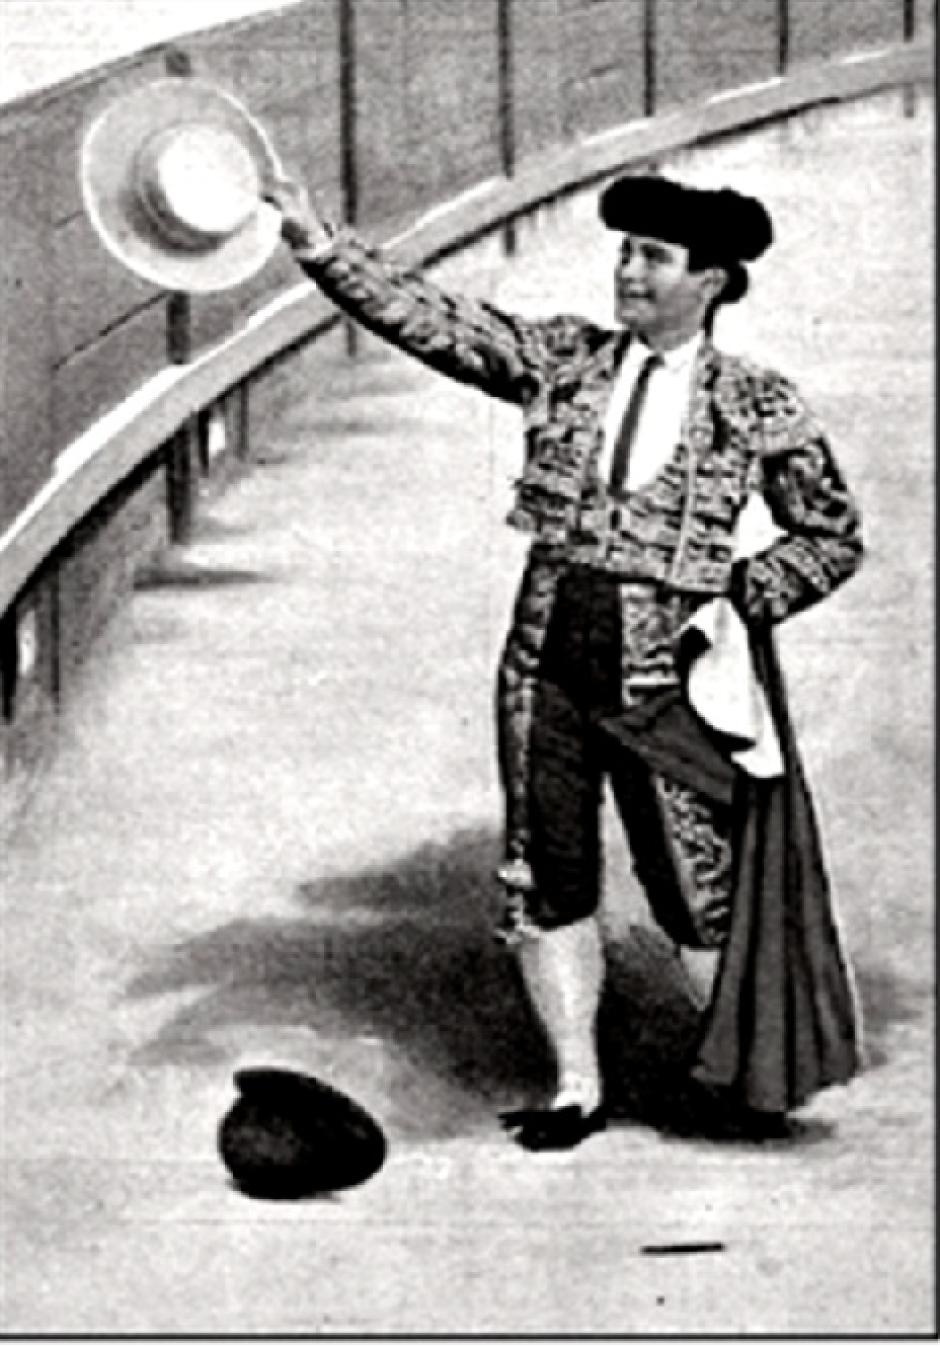 Bombita devolviendo un sombrero cordobés, arrojado al ruedo. Sala Goya. Museo de Bellas Artes. Recoletos-Madrid